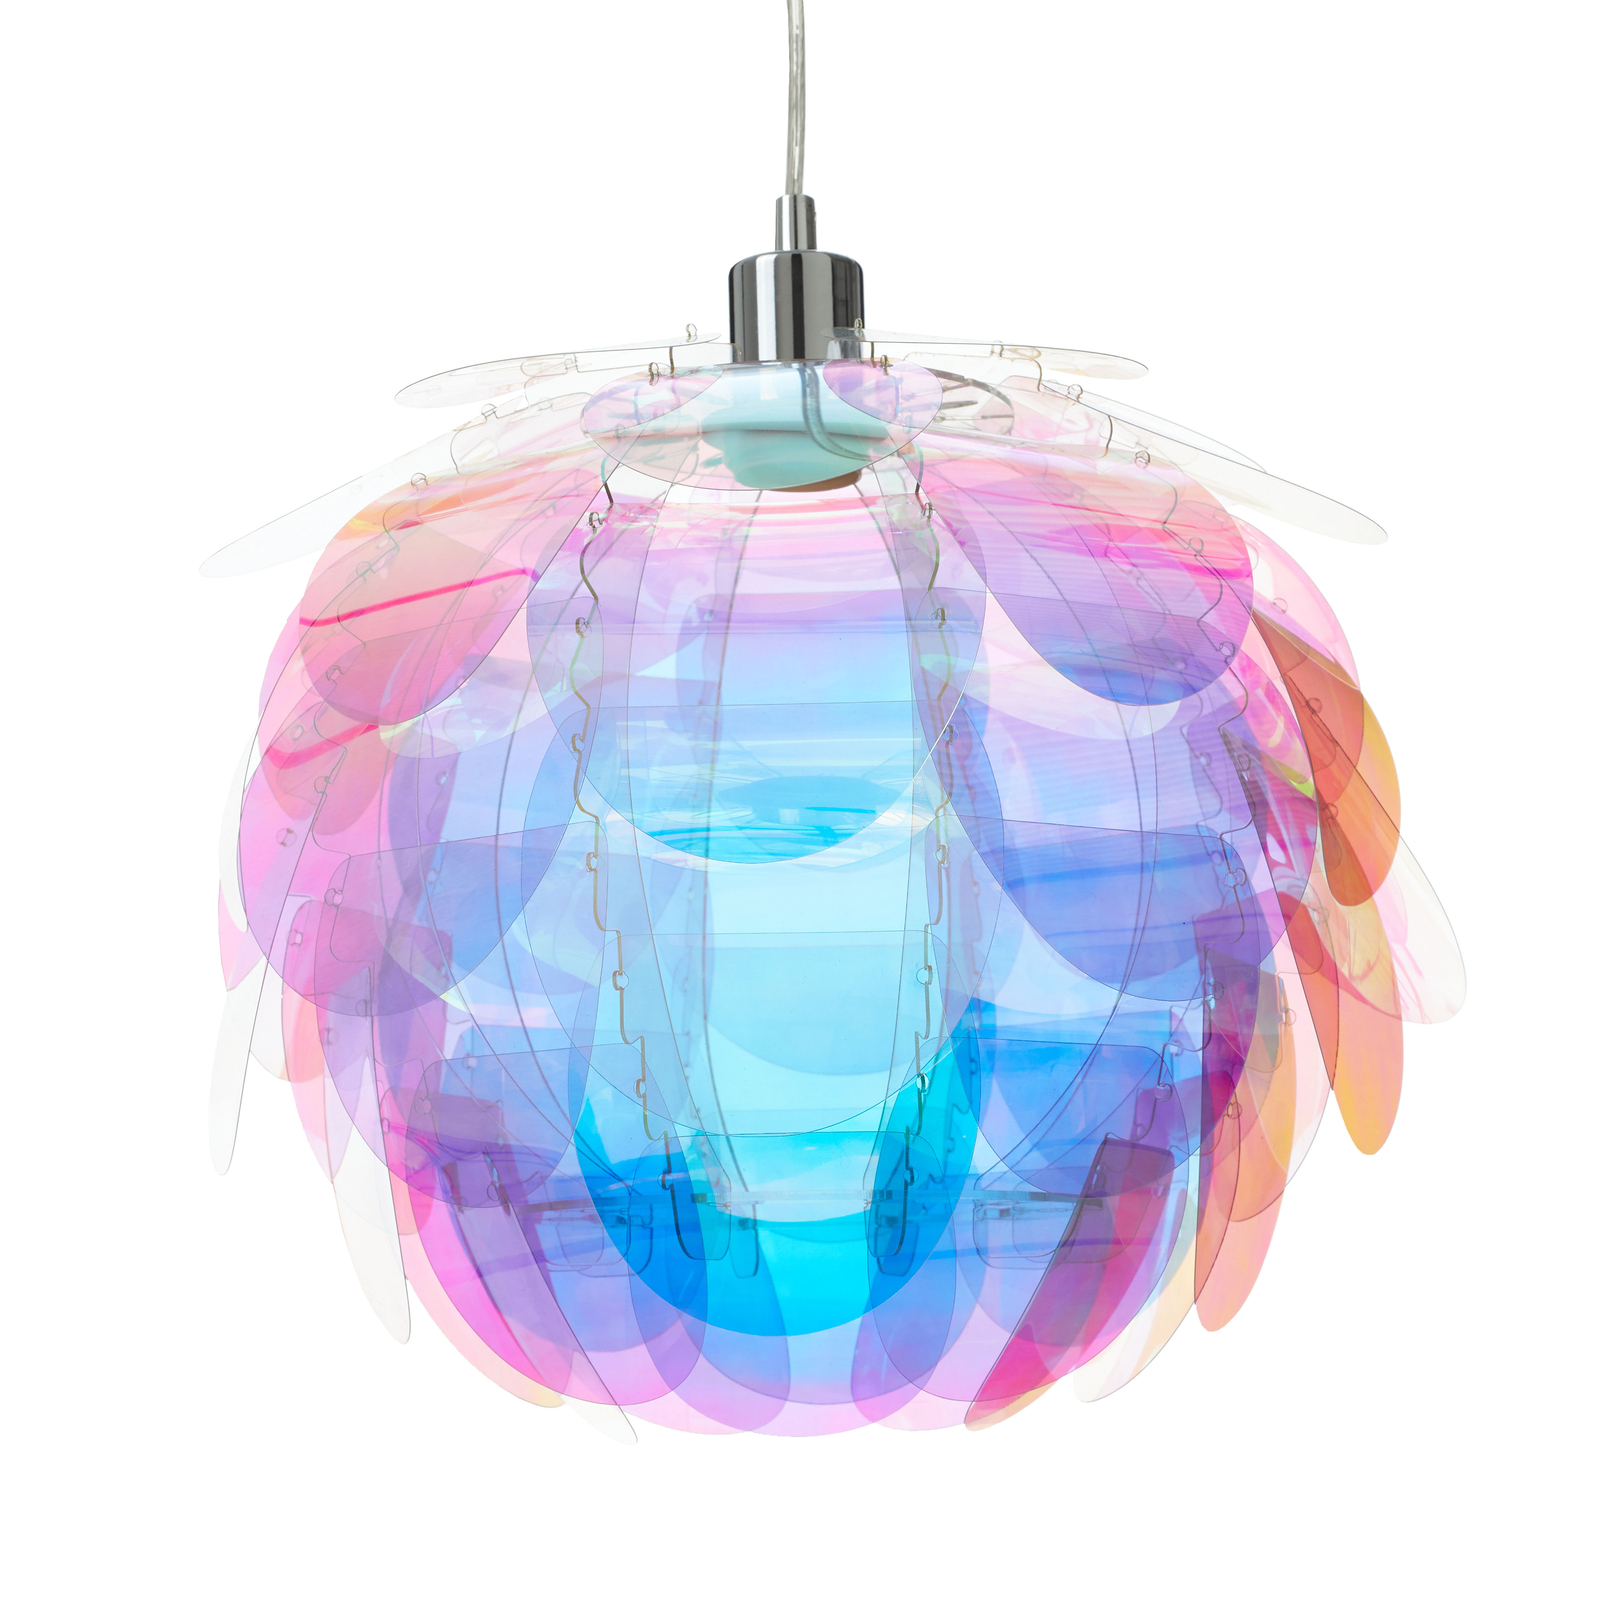 Hanglamp Clover in regenboogkleuren